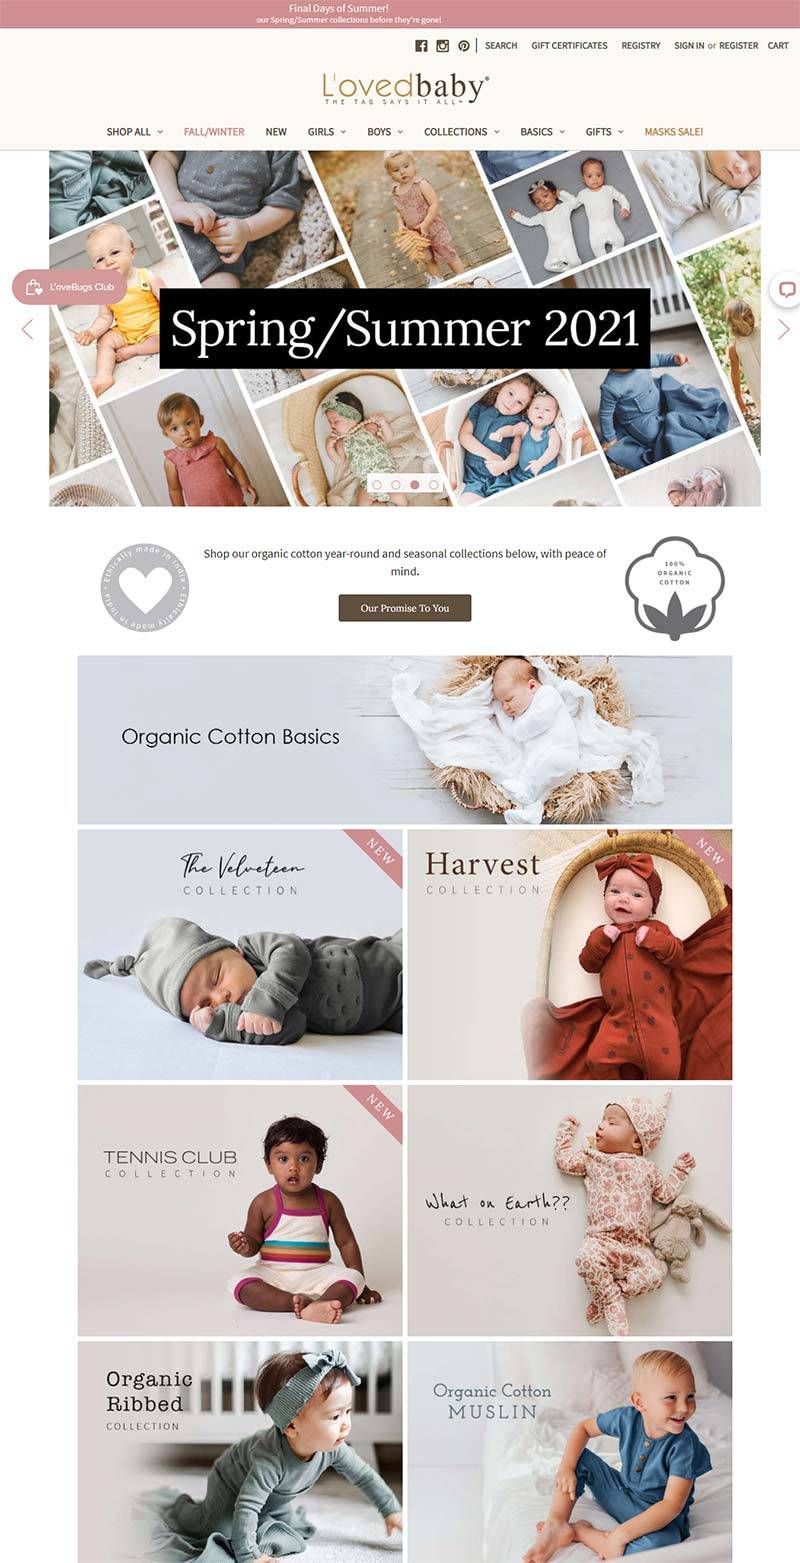 L'ovedbaby 美国婴儿有机棉服饰品牌购物网站